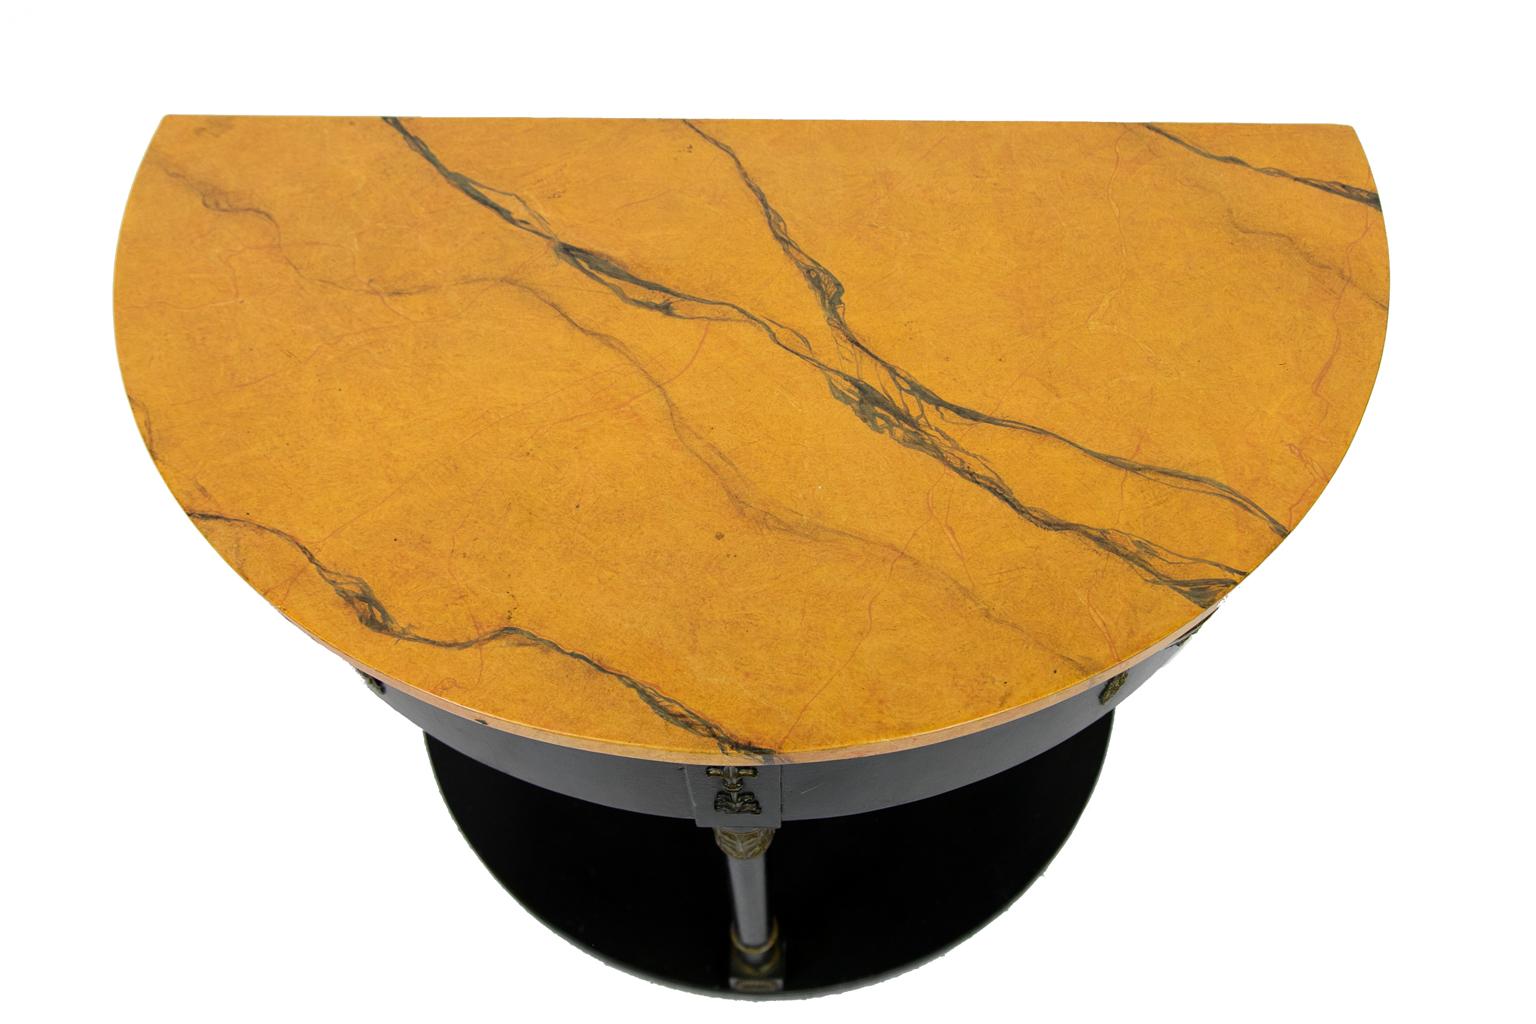 Faux gemalt Demilune Regency-Stil Englisch Tisch, ist die Platte faux gemalt, um Siena Marmor zu simulieren. Der volle Sockel ist schwarz mit vergoldeten Akanthusblättern und Kranzschnitzereien.
   